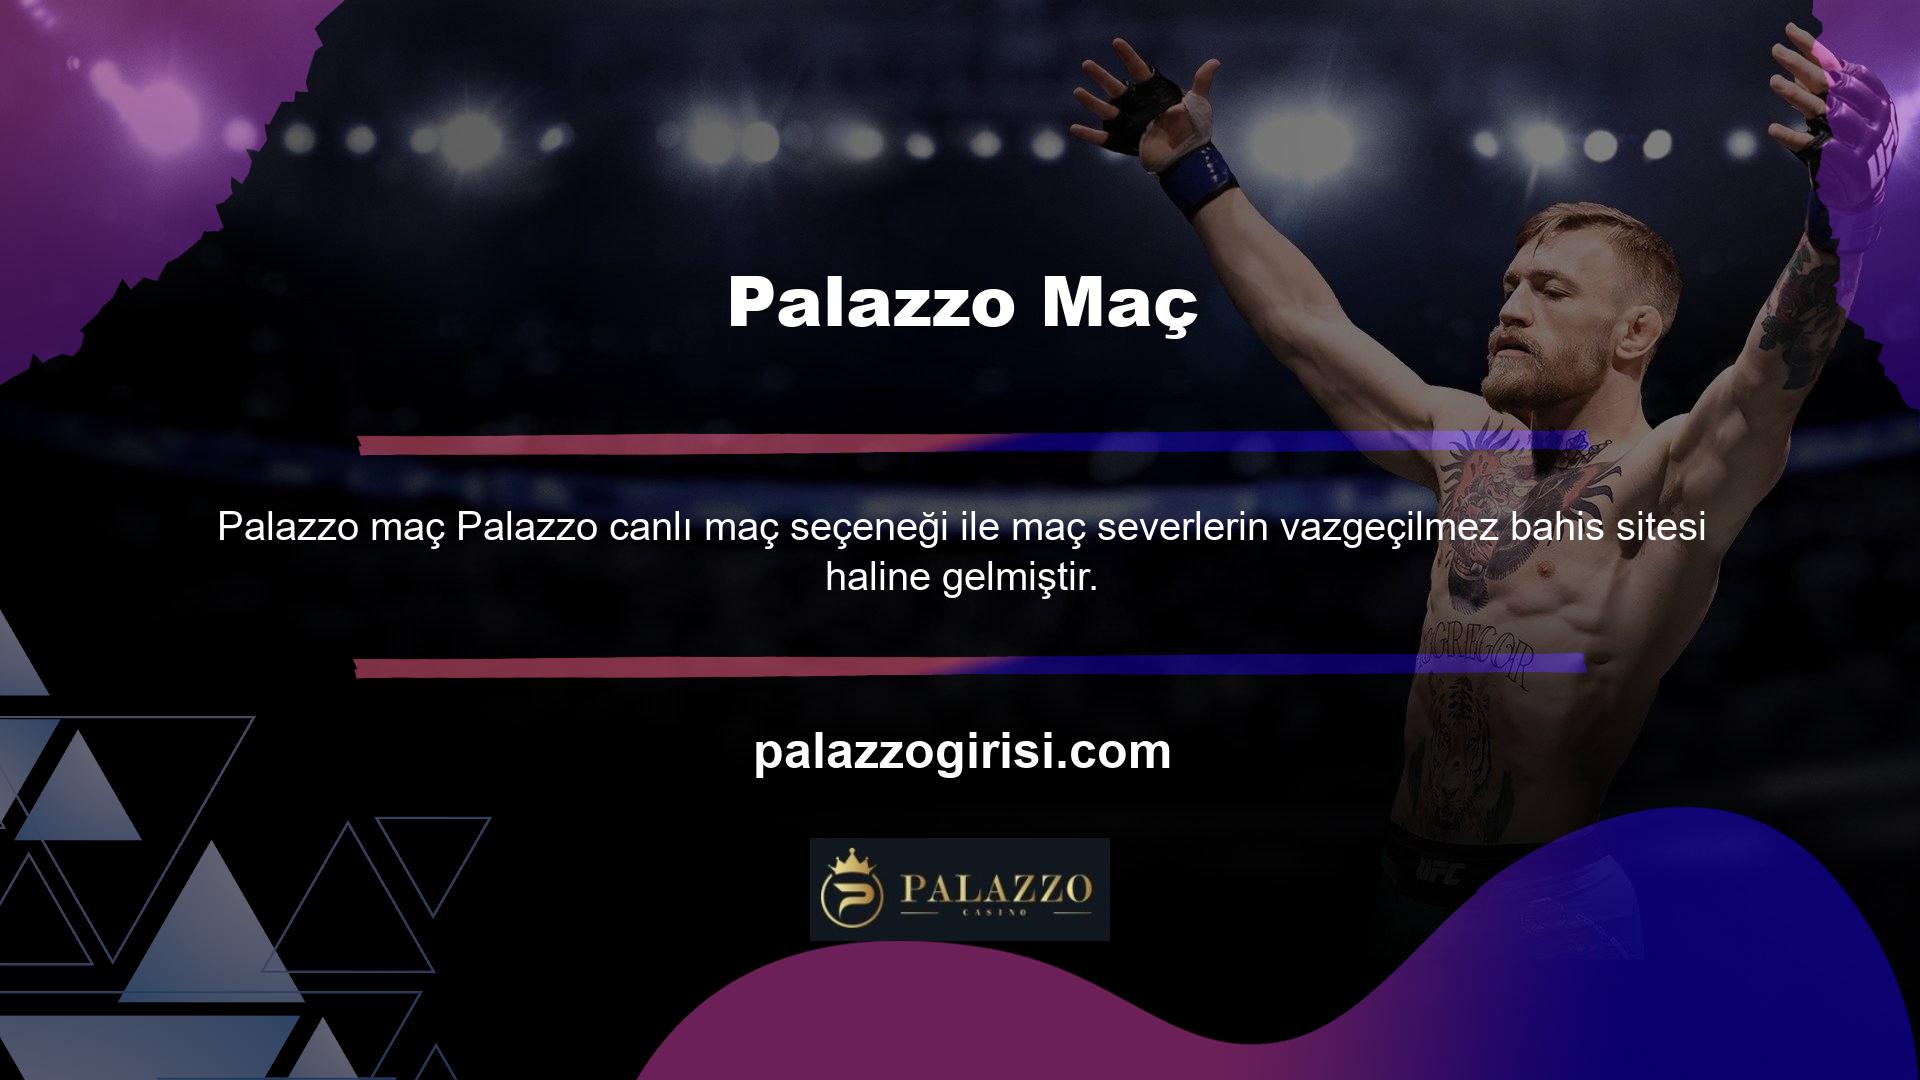 Palazzo Canlı Maç, uluslararası spor etkinliklerini Palazzo TV'de ücretsiz olarak yayınlayacak ve etkinlik içeriğini web sitenizde gösterecek